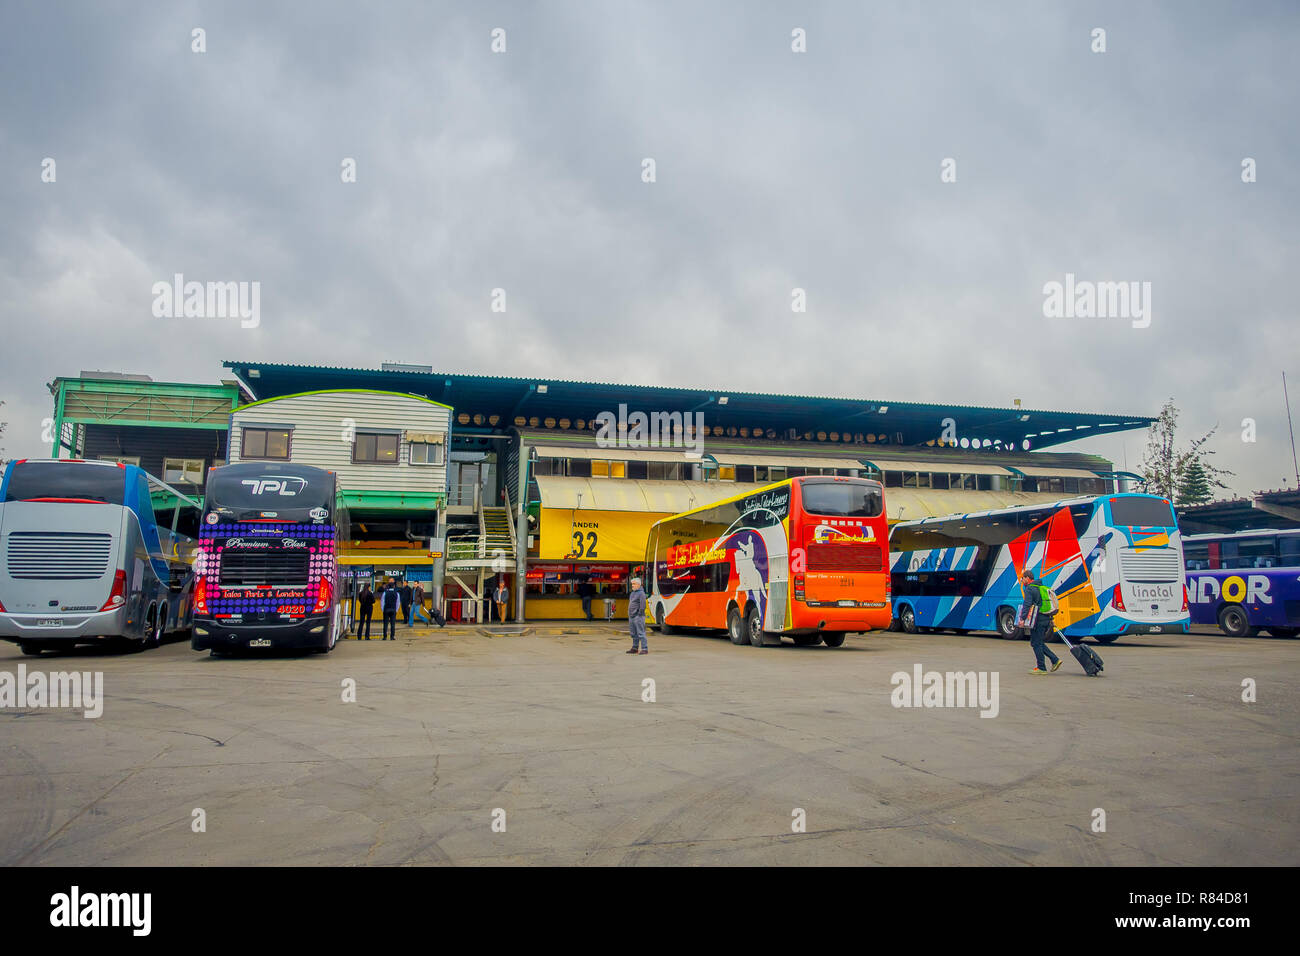 SANTIAGO, CHILI - 09 octobre, 2018 : vue extérieure de l'autobus stationnés dans une rangée à l'intérieur de l'aérogare sur les plates-formes à la station Alameda. C'est la larg Banque D'Images